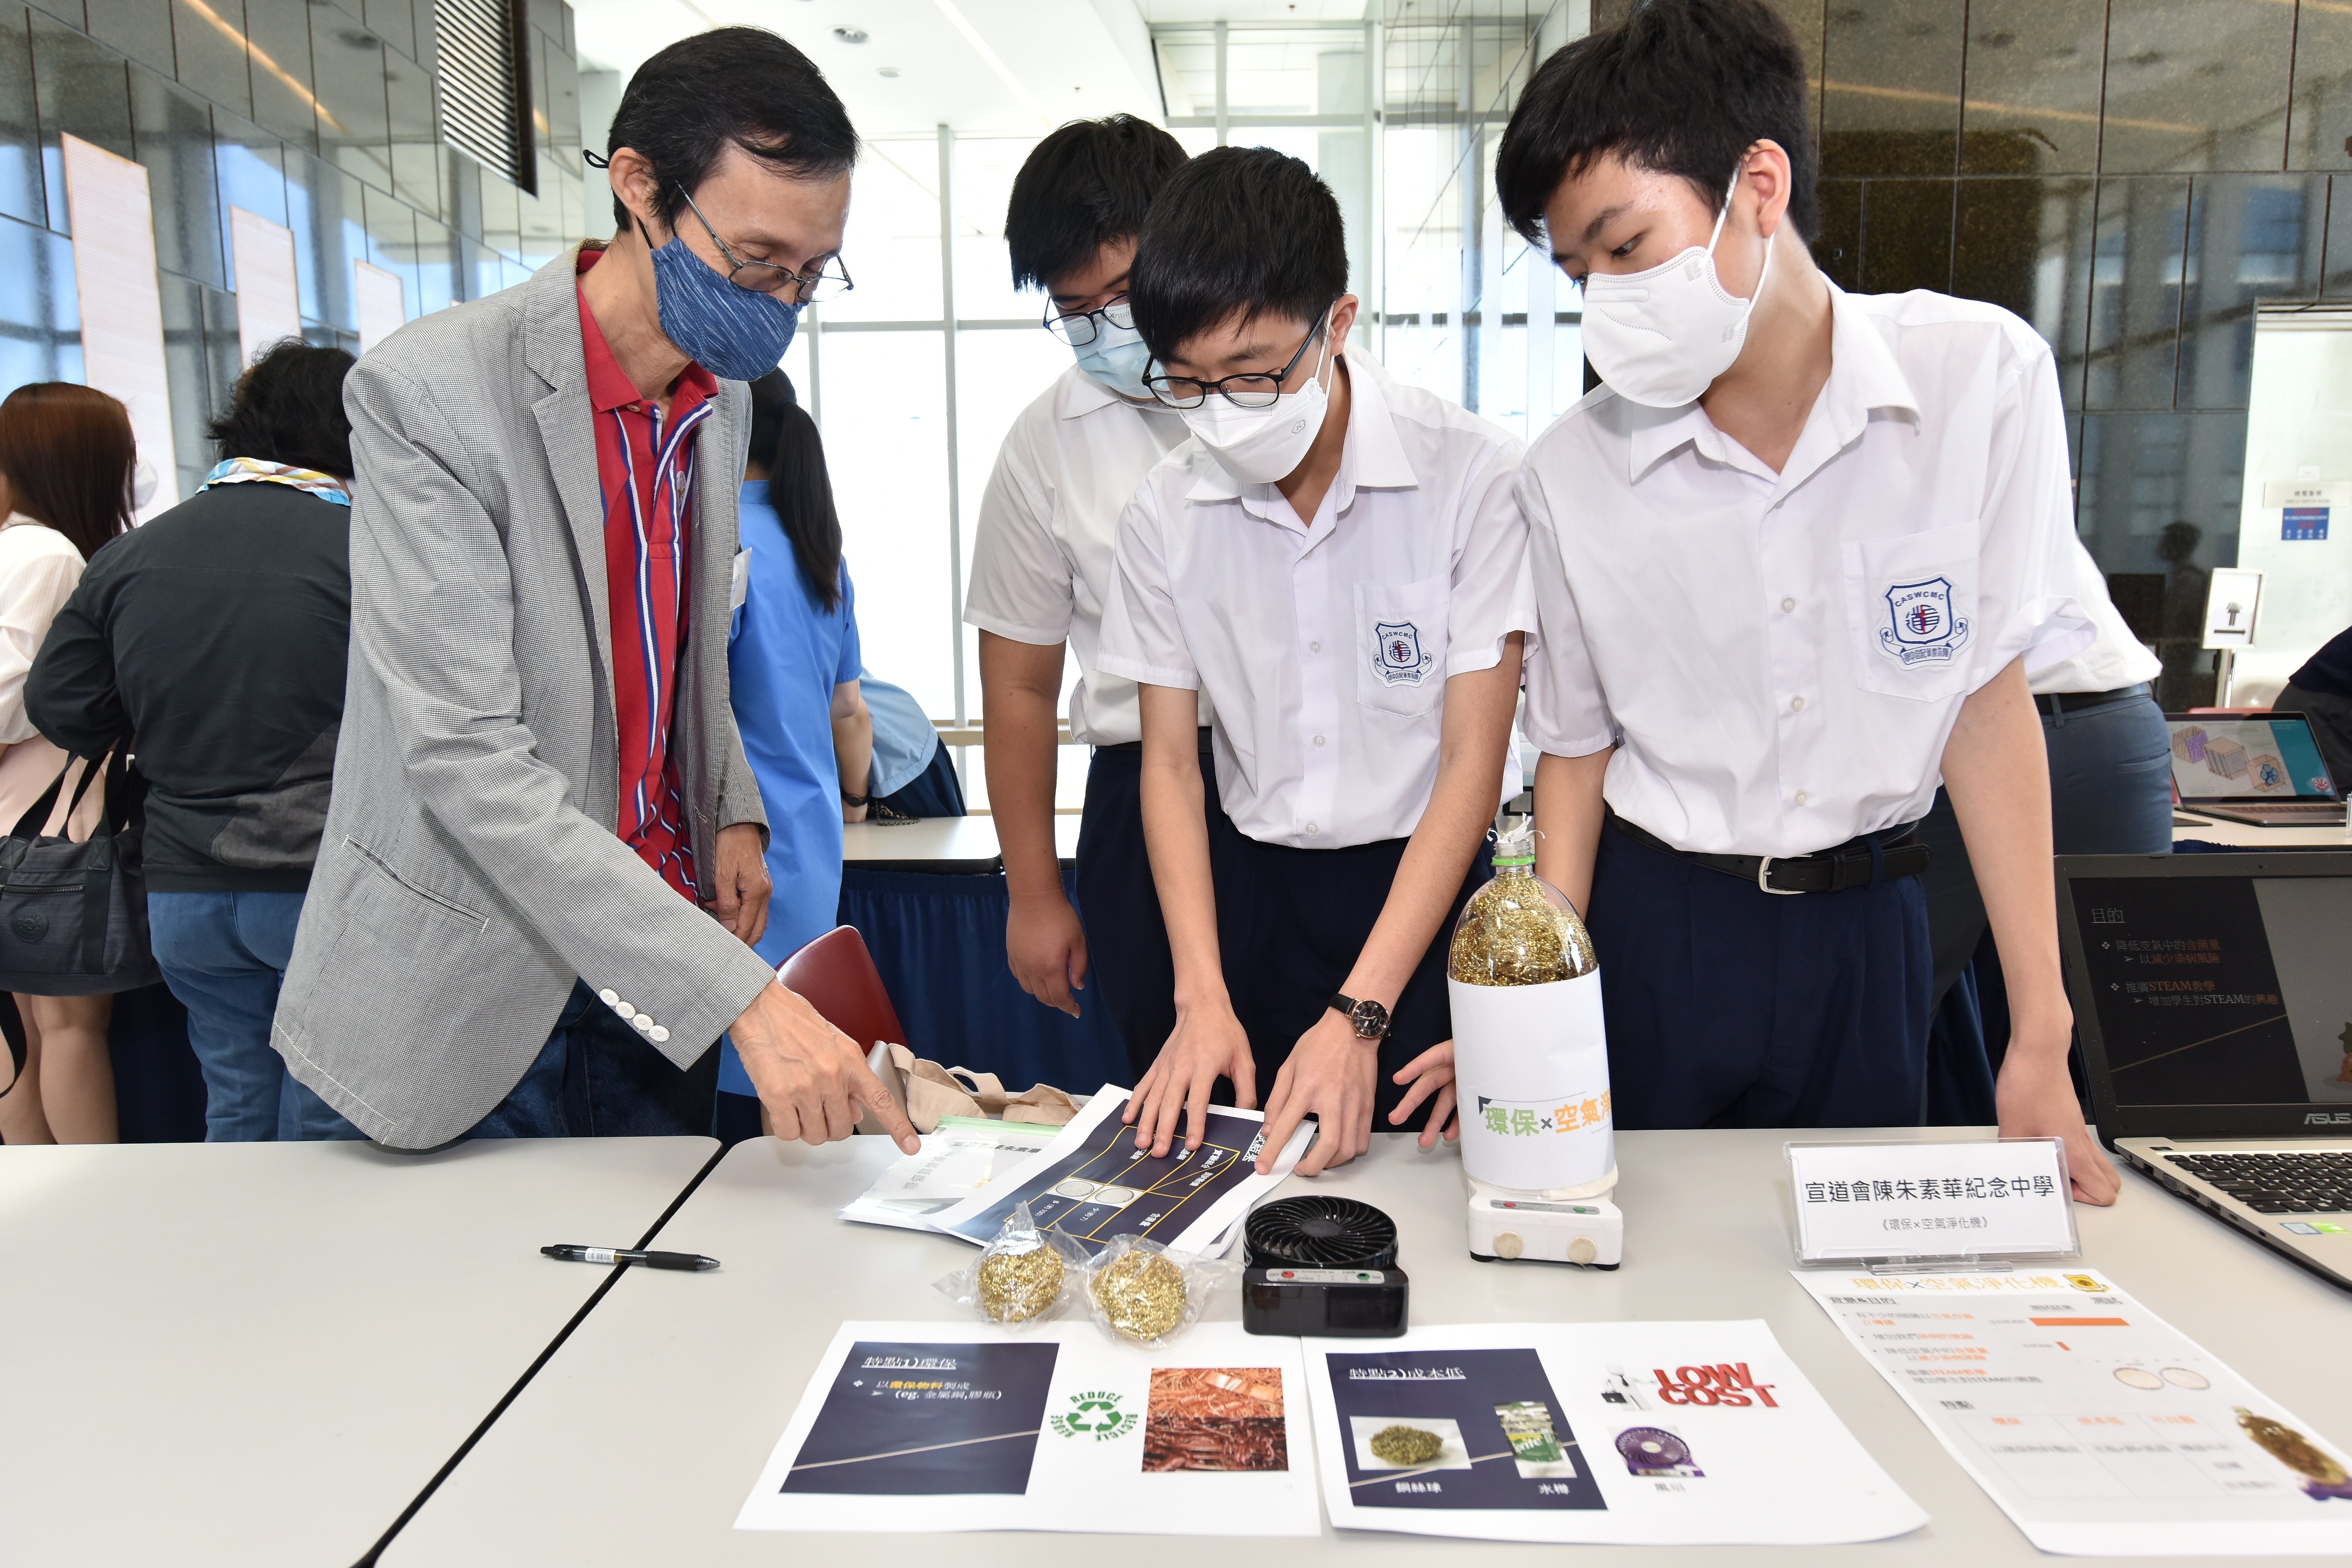 一众嘉宾参观学校展览摊位，了解同学们各项作品的创作点子及对香港空气污染的见解。